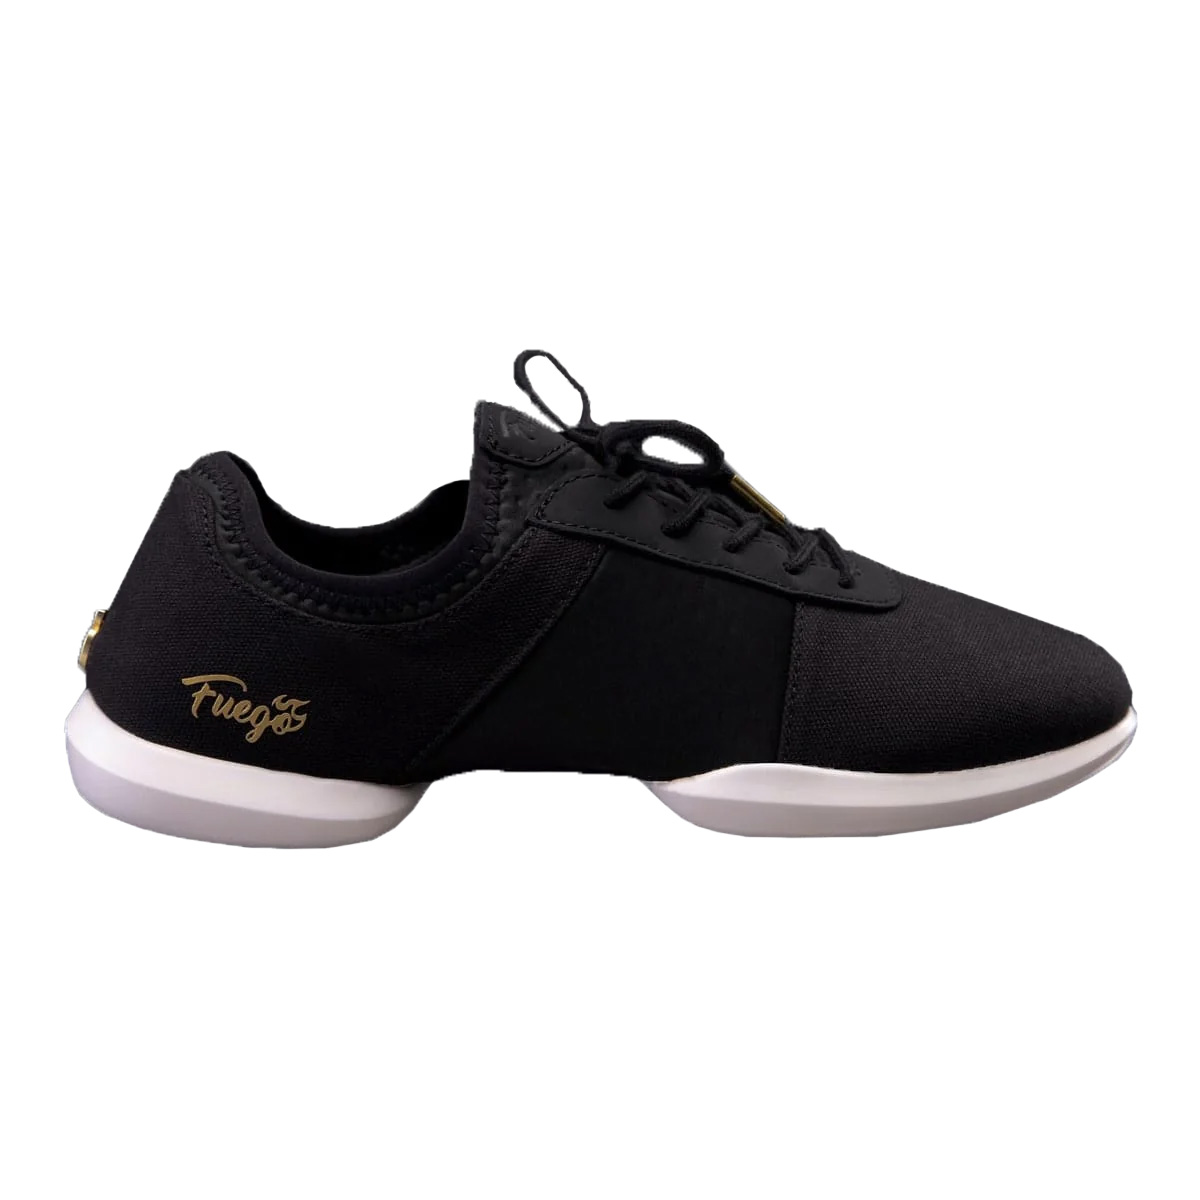 Fuego Unisex Split-Sole Dance Sneakers Black - Neopren